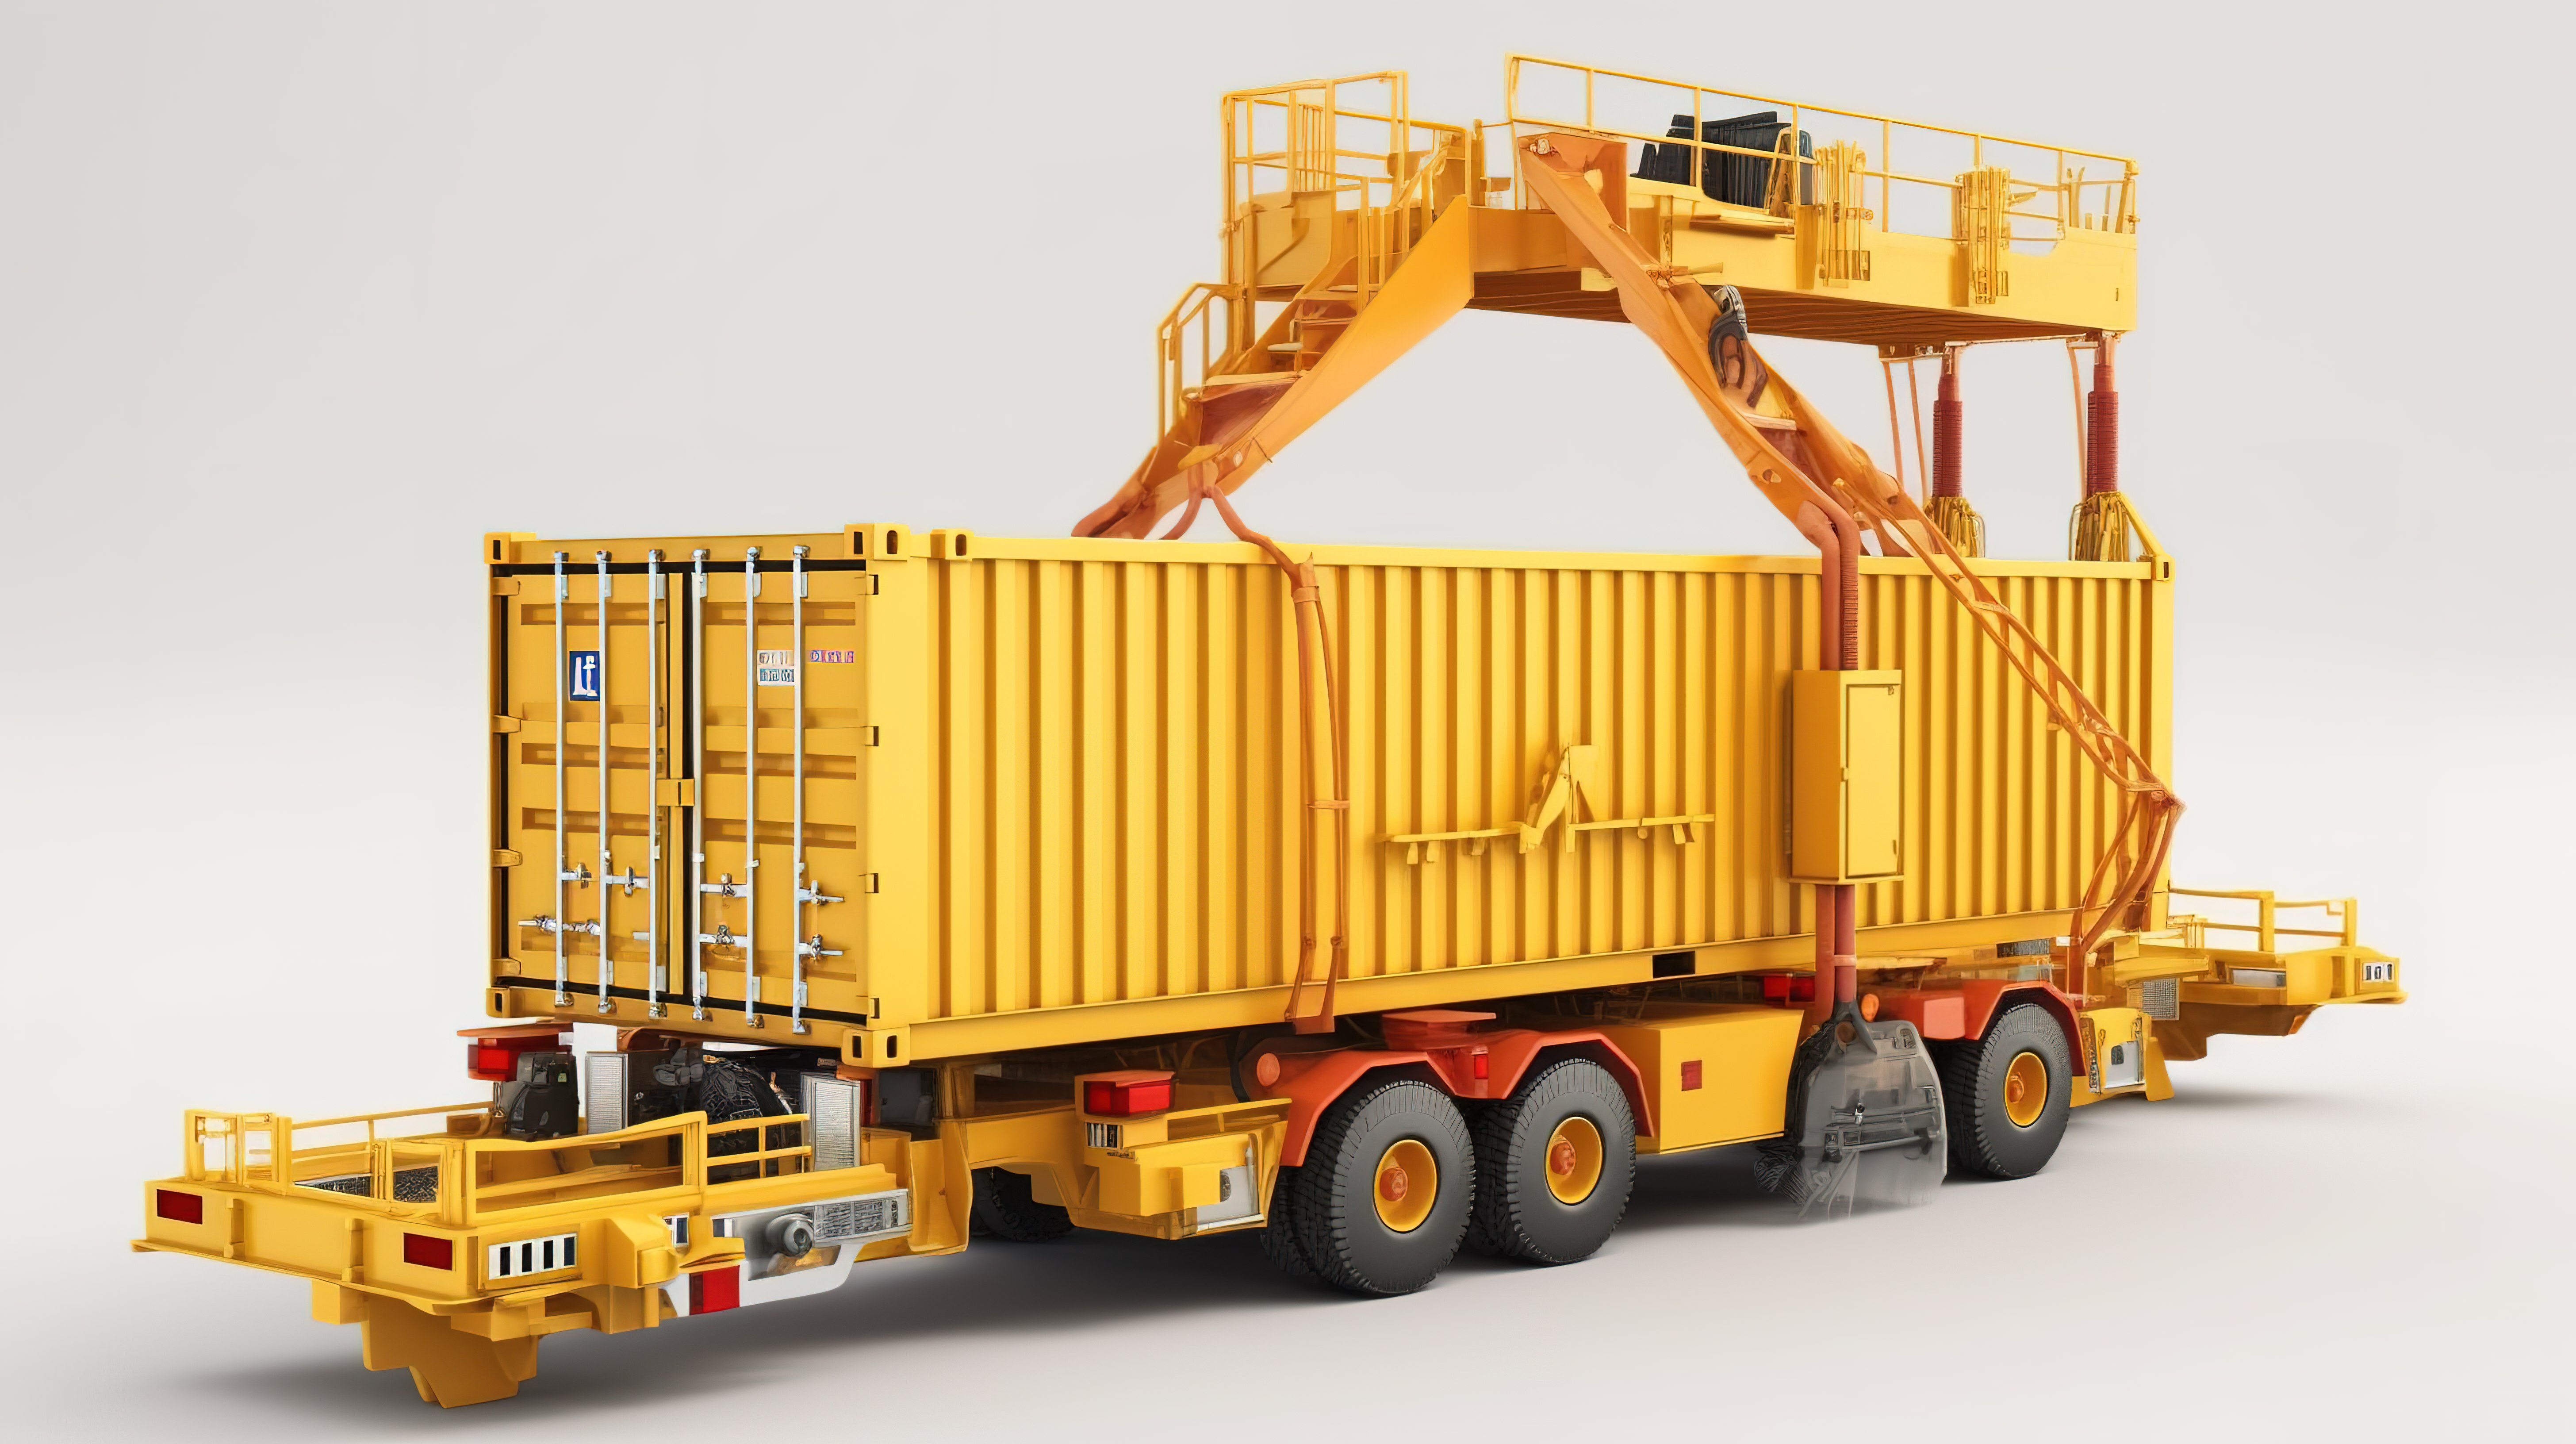 工业起重机装载容器在 3d 渲染中强调工业和运输主题与剪切路径图片